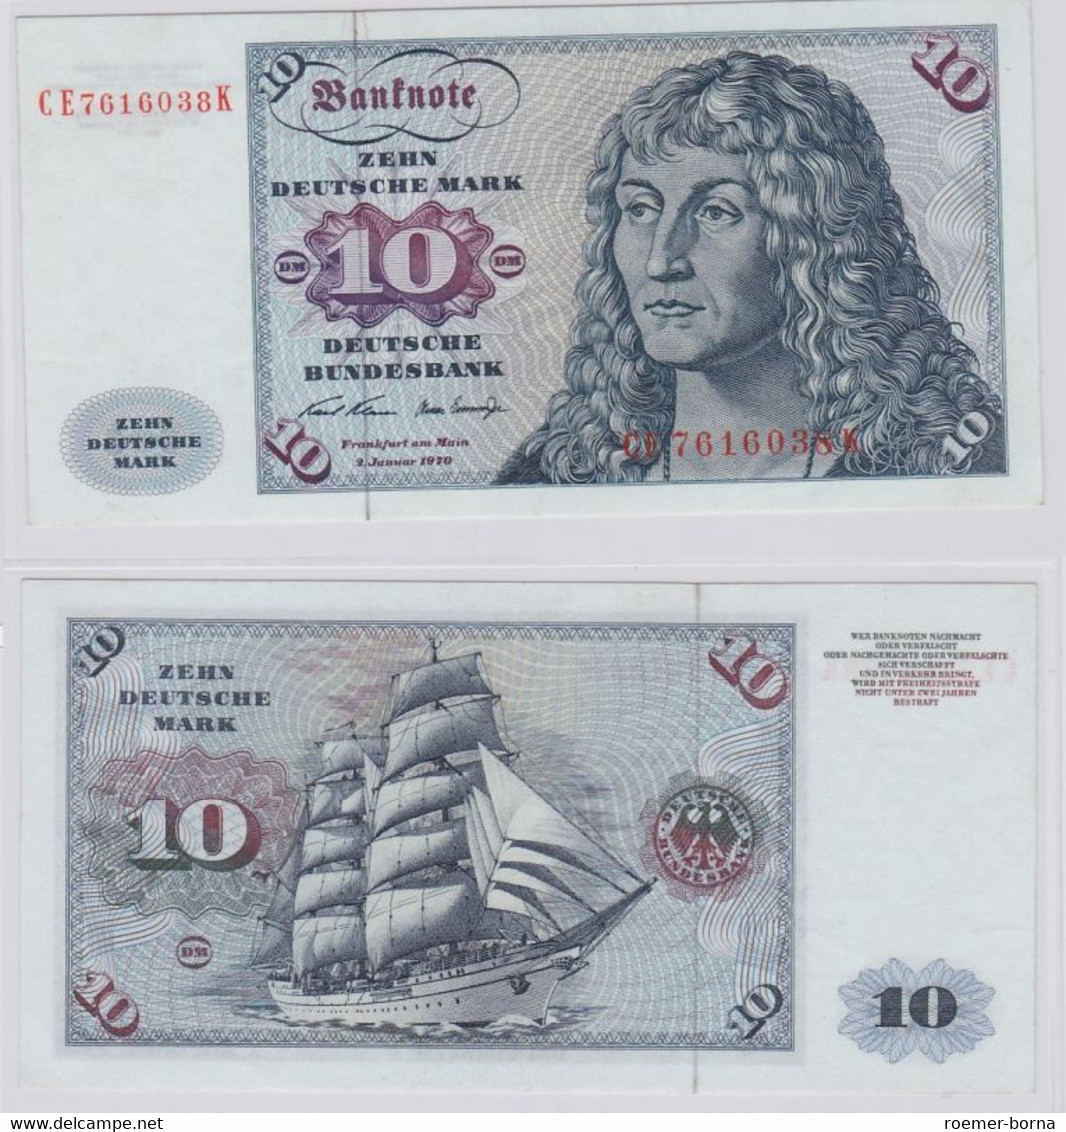 T146041 Banknote 10 DM Deutsche Mark Ro. 270b Schein 2.Jan. 1970 KN CE 7616038 K - 10 Deutsche Mark